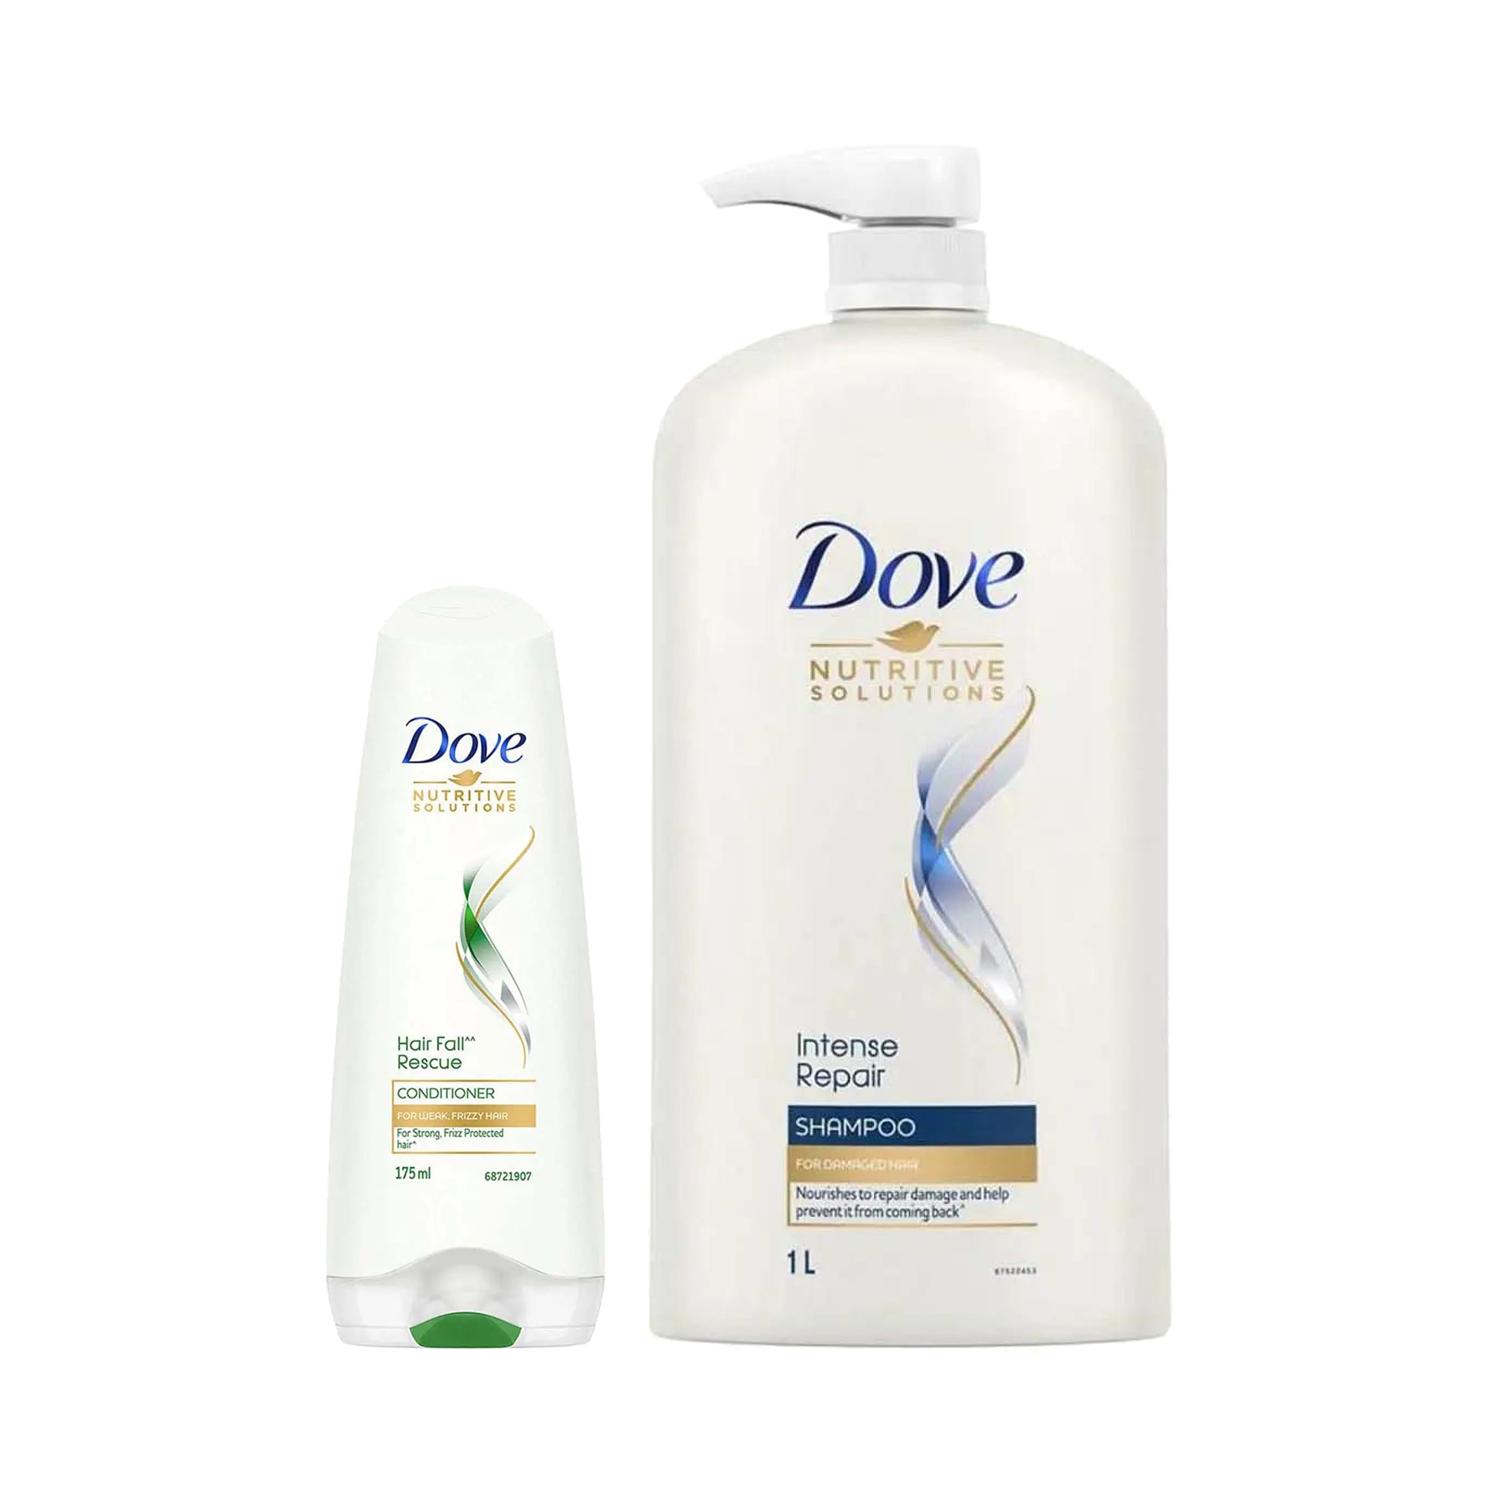 Dove | Dove Intense Repair Shampoo (1000 ml) + Hair Fall Rescue Conditioner (175 ml) Combo